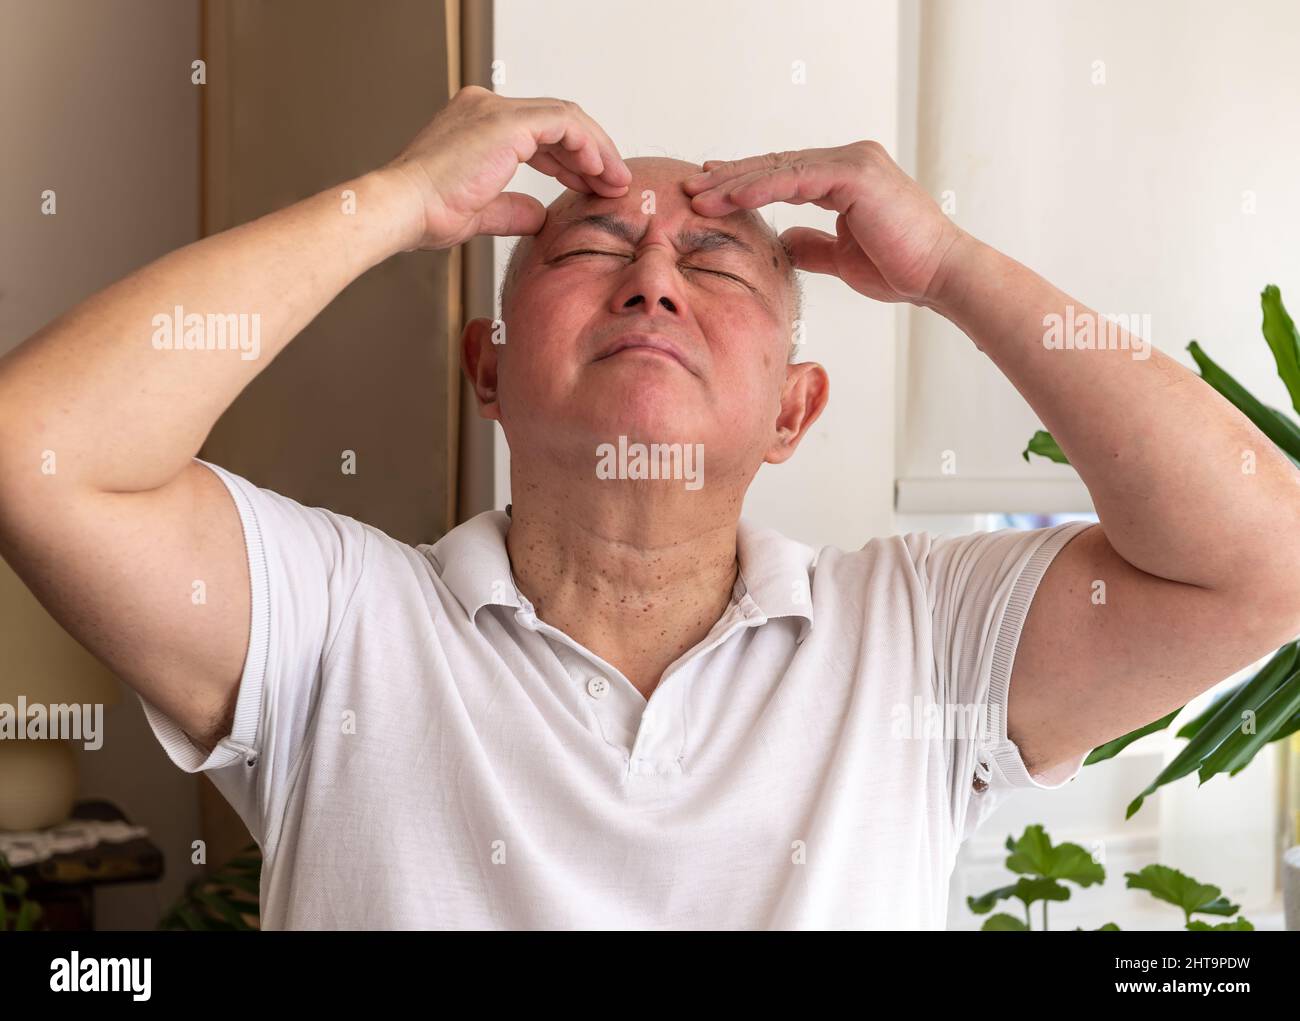 Un homme âgé mûr à la maison pinçant et frottant sa tête se sentant mal et ou dans la douleur. Concept de malaise. Banque D'Images